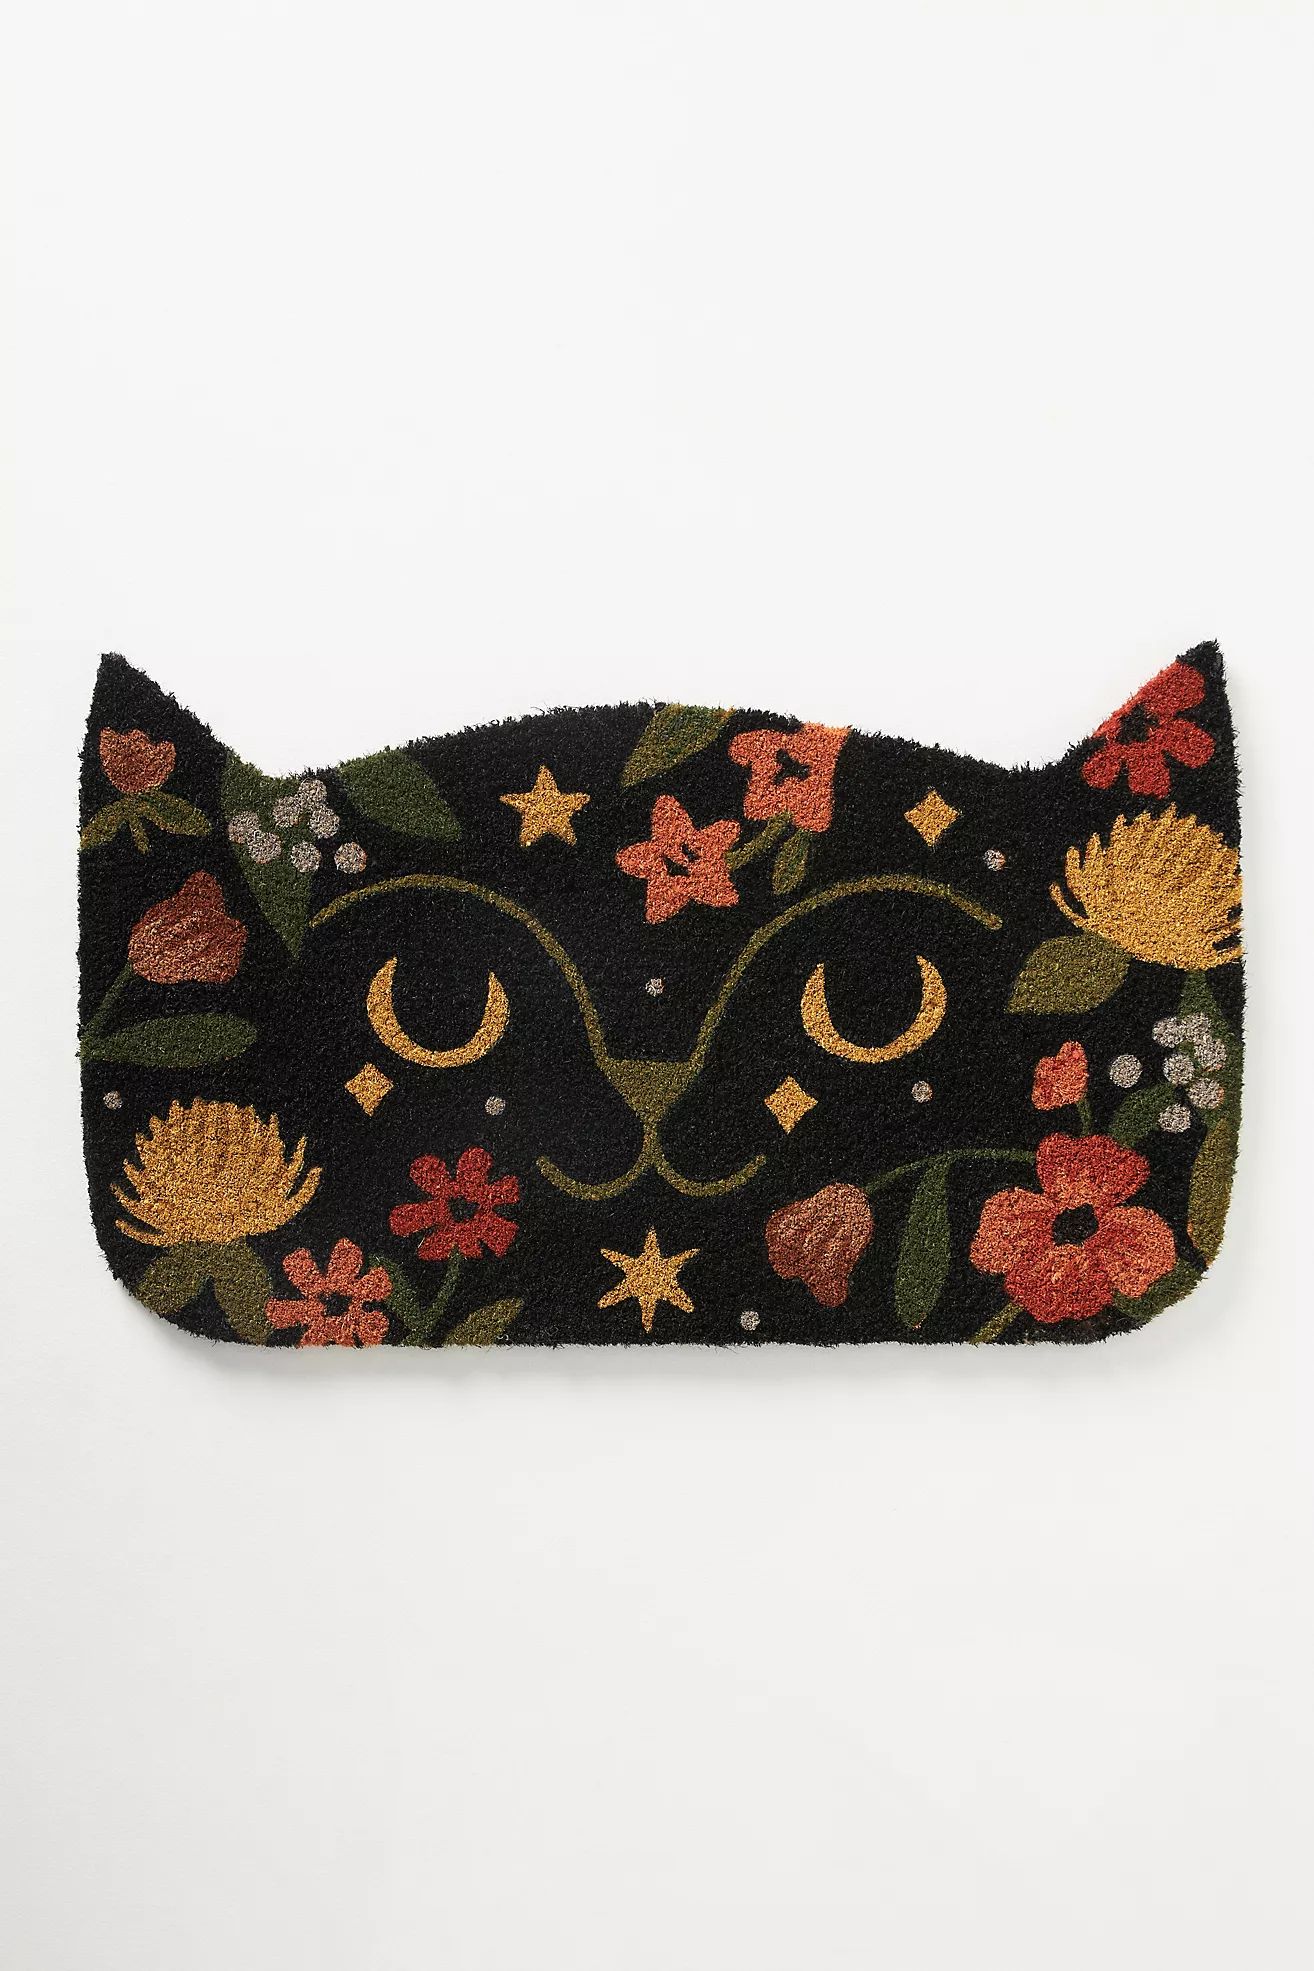 Autumn Cat Doormat | Anthropologie (US)